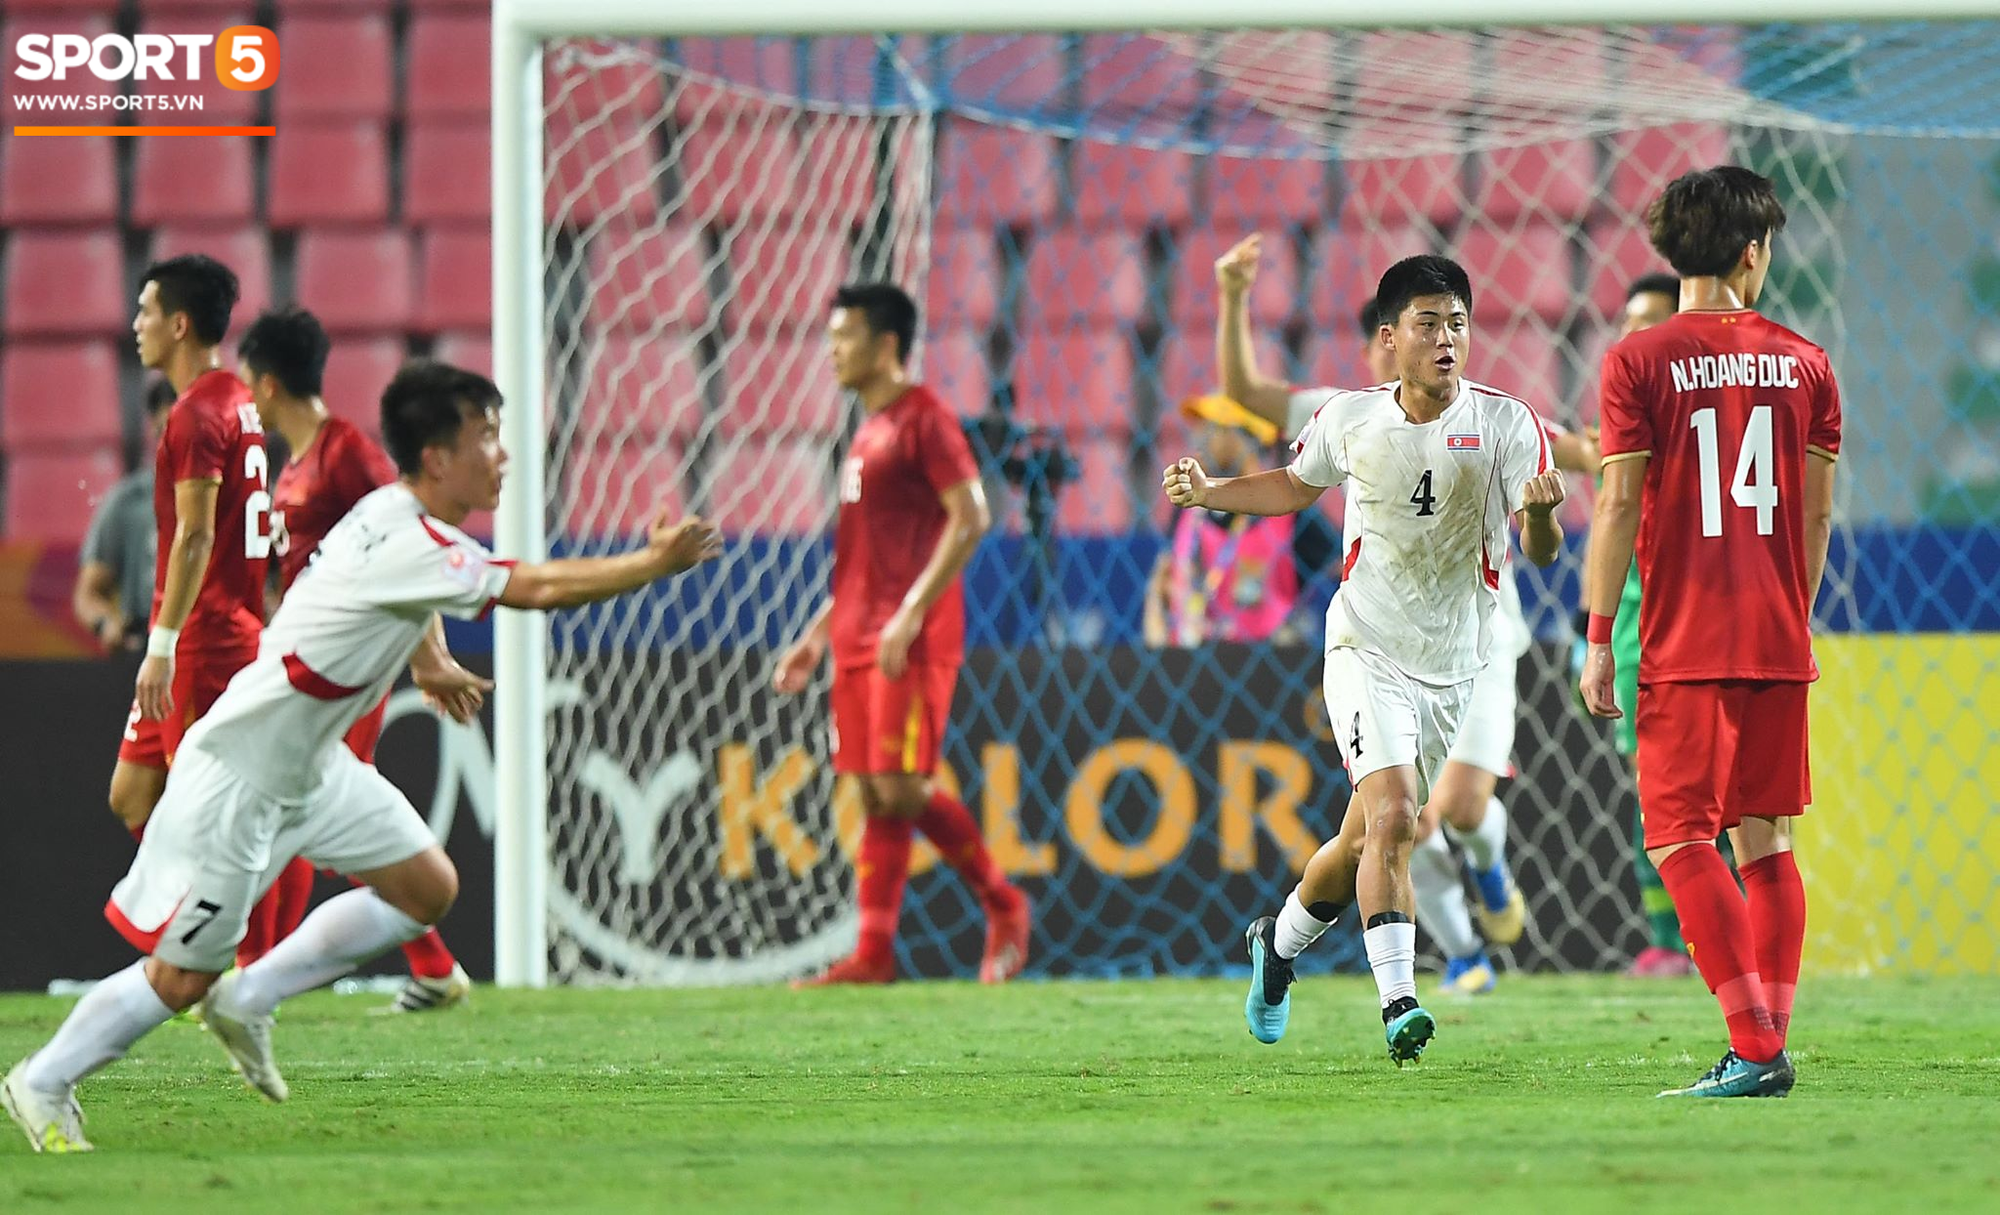 HLV U23 Triều Tiên: Việt Nam rất mạnh, nhưng một sai lầm khiến họ trả giá - Ảnh 3.